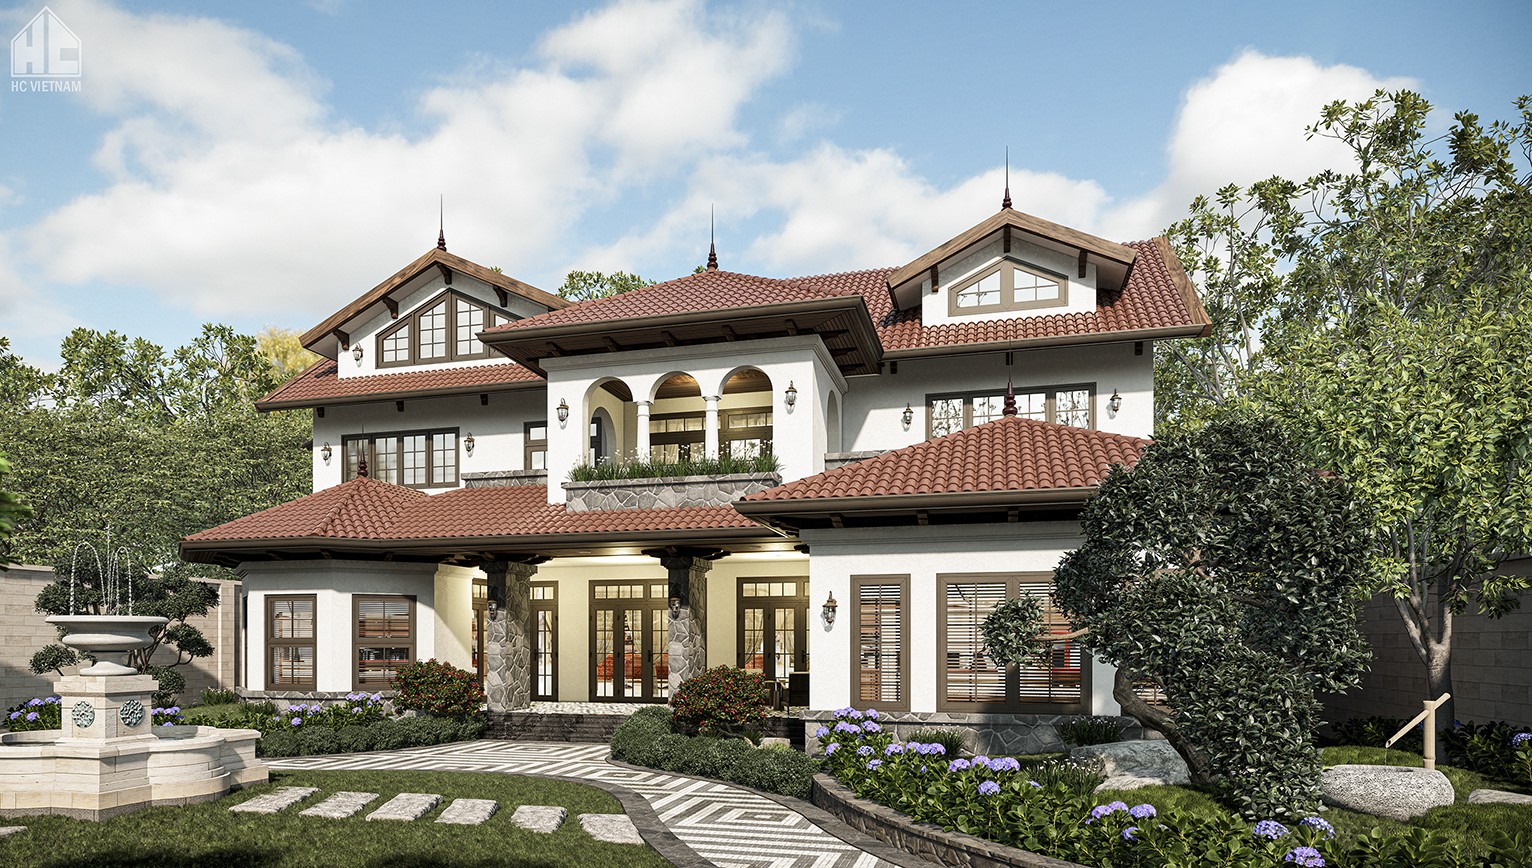 Thiết kế nhà đẹp tại Thái Nguyên - Công ty kiên trúc HC